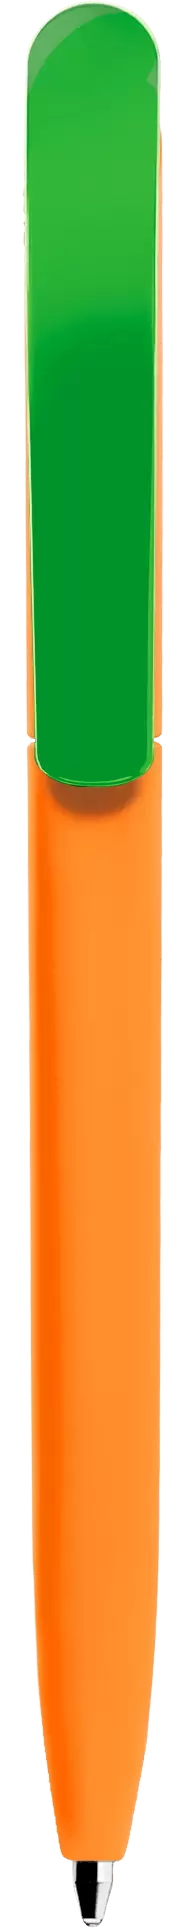 Ручка VIVALDI SOFT MIX Оранжевая с салатовым 1333-05-15